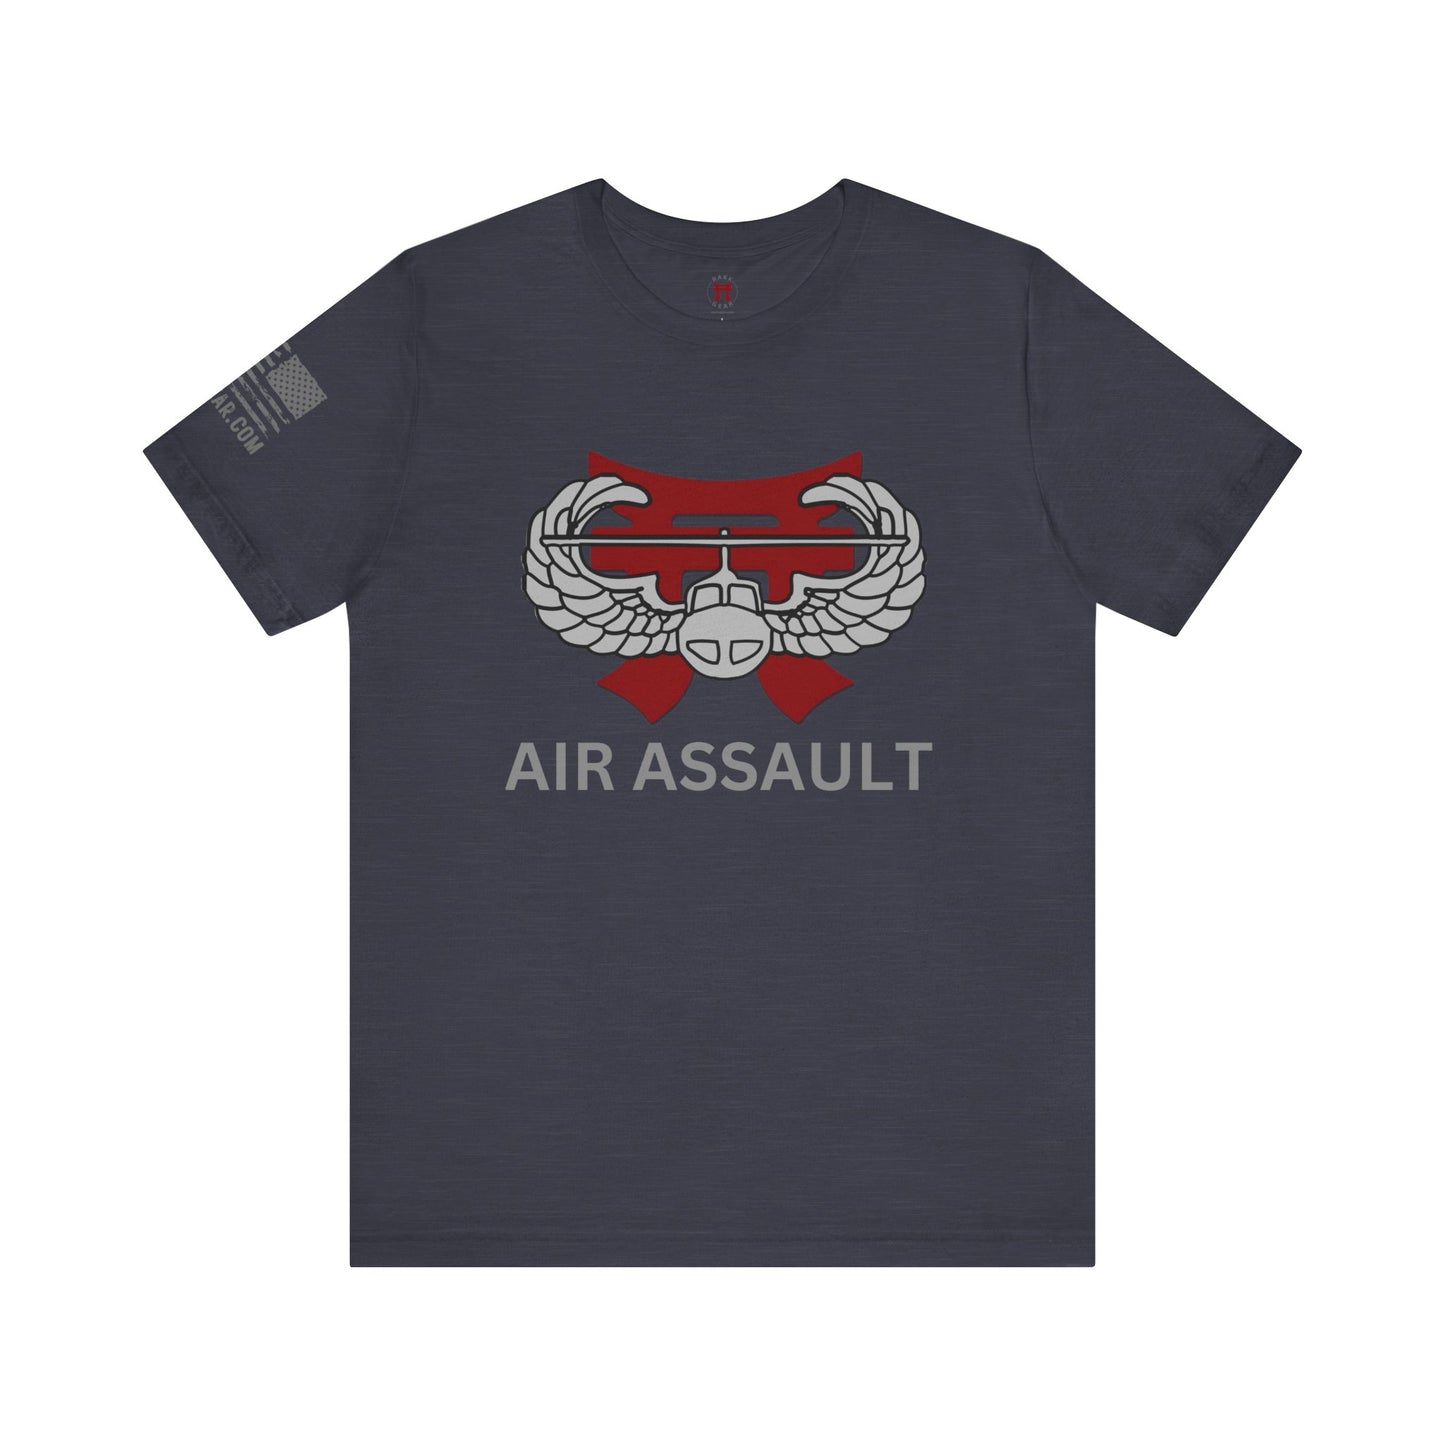 Rakkgear Air Assault Short Sleeve Tee in navy blue